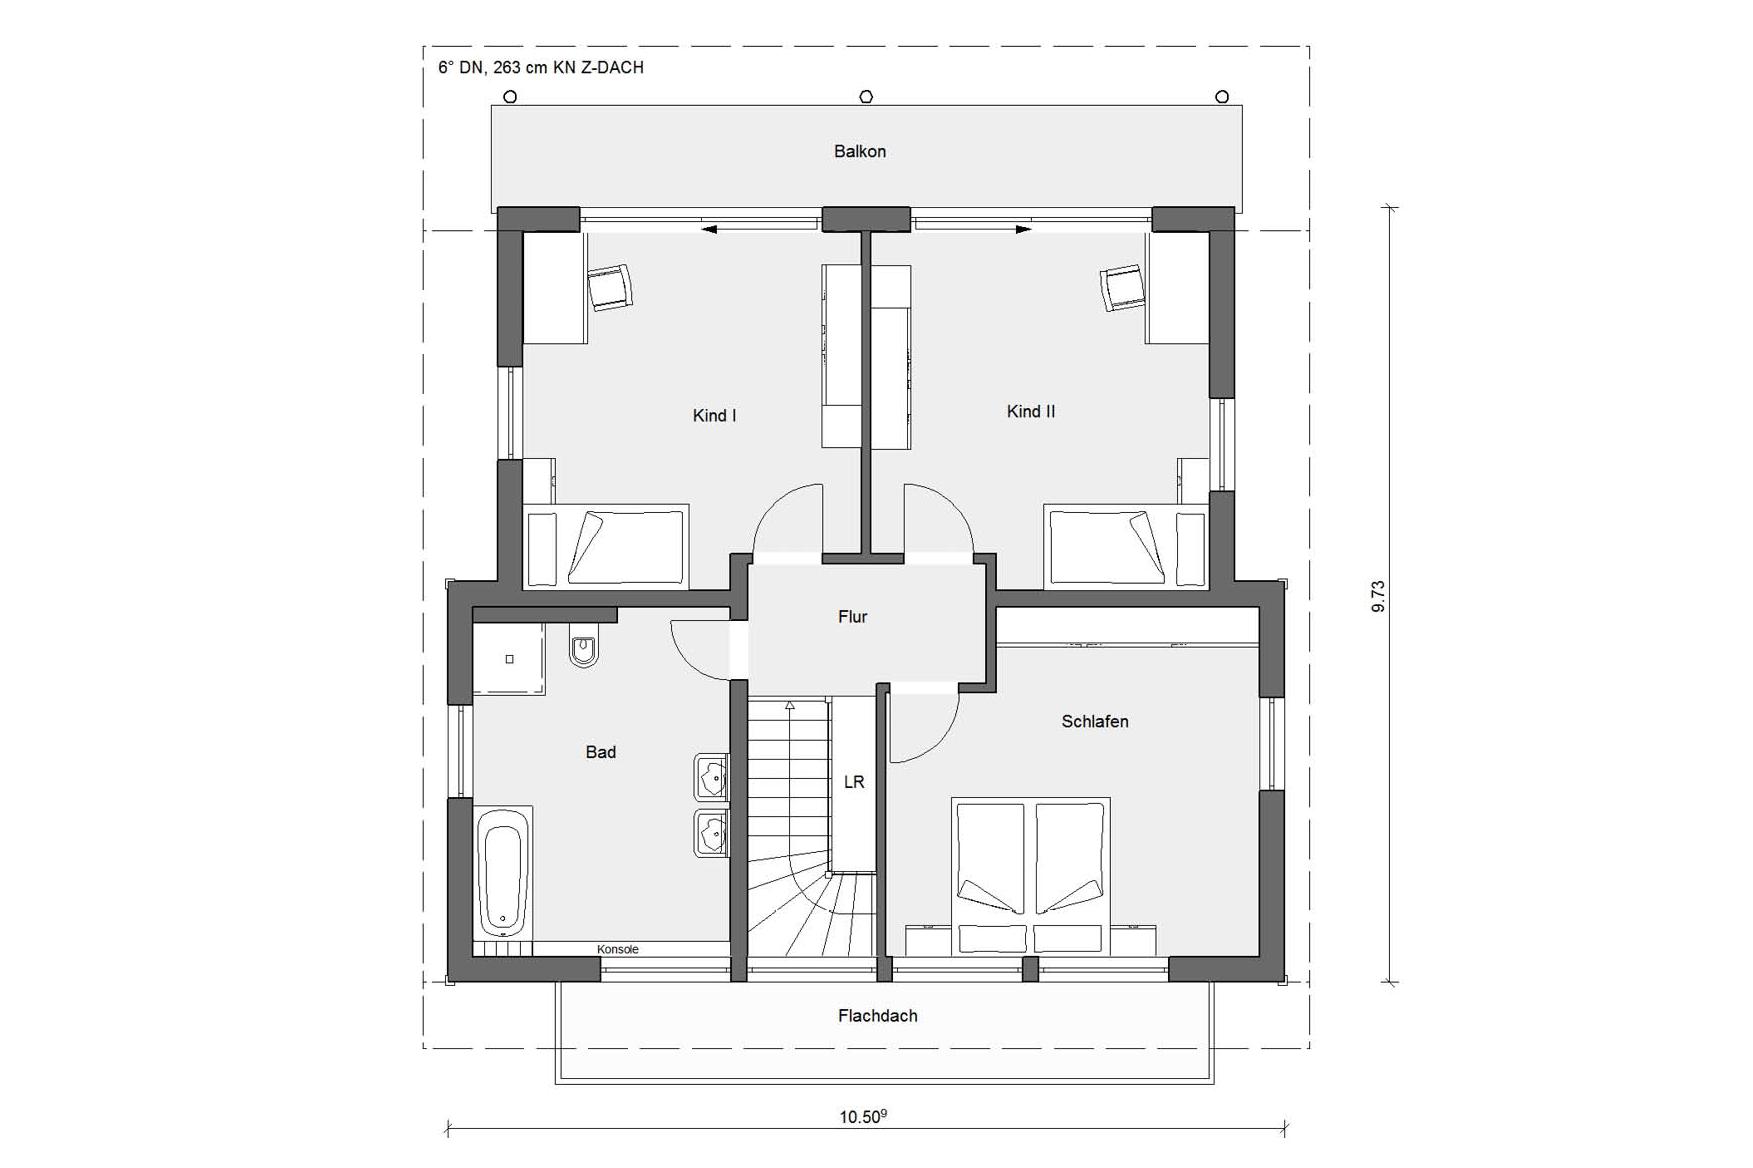 Floor plan attic modern family house E 20-158.1